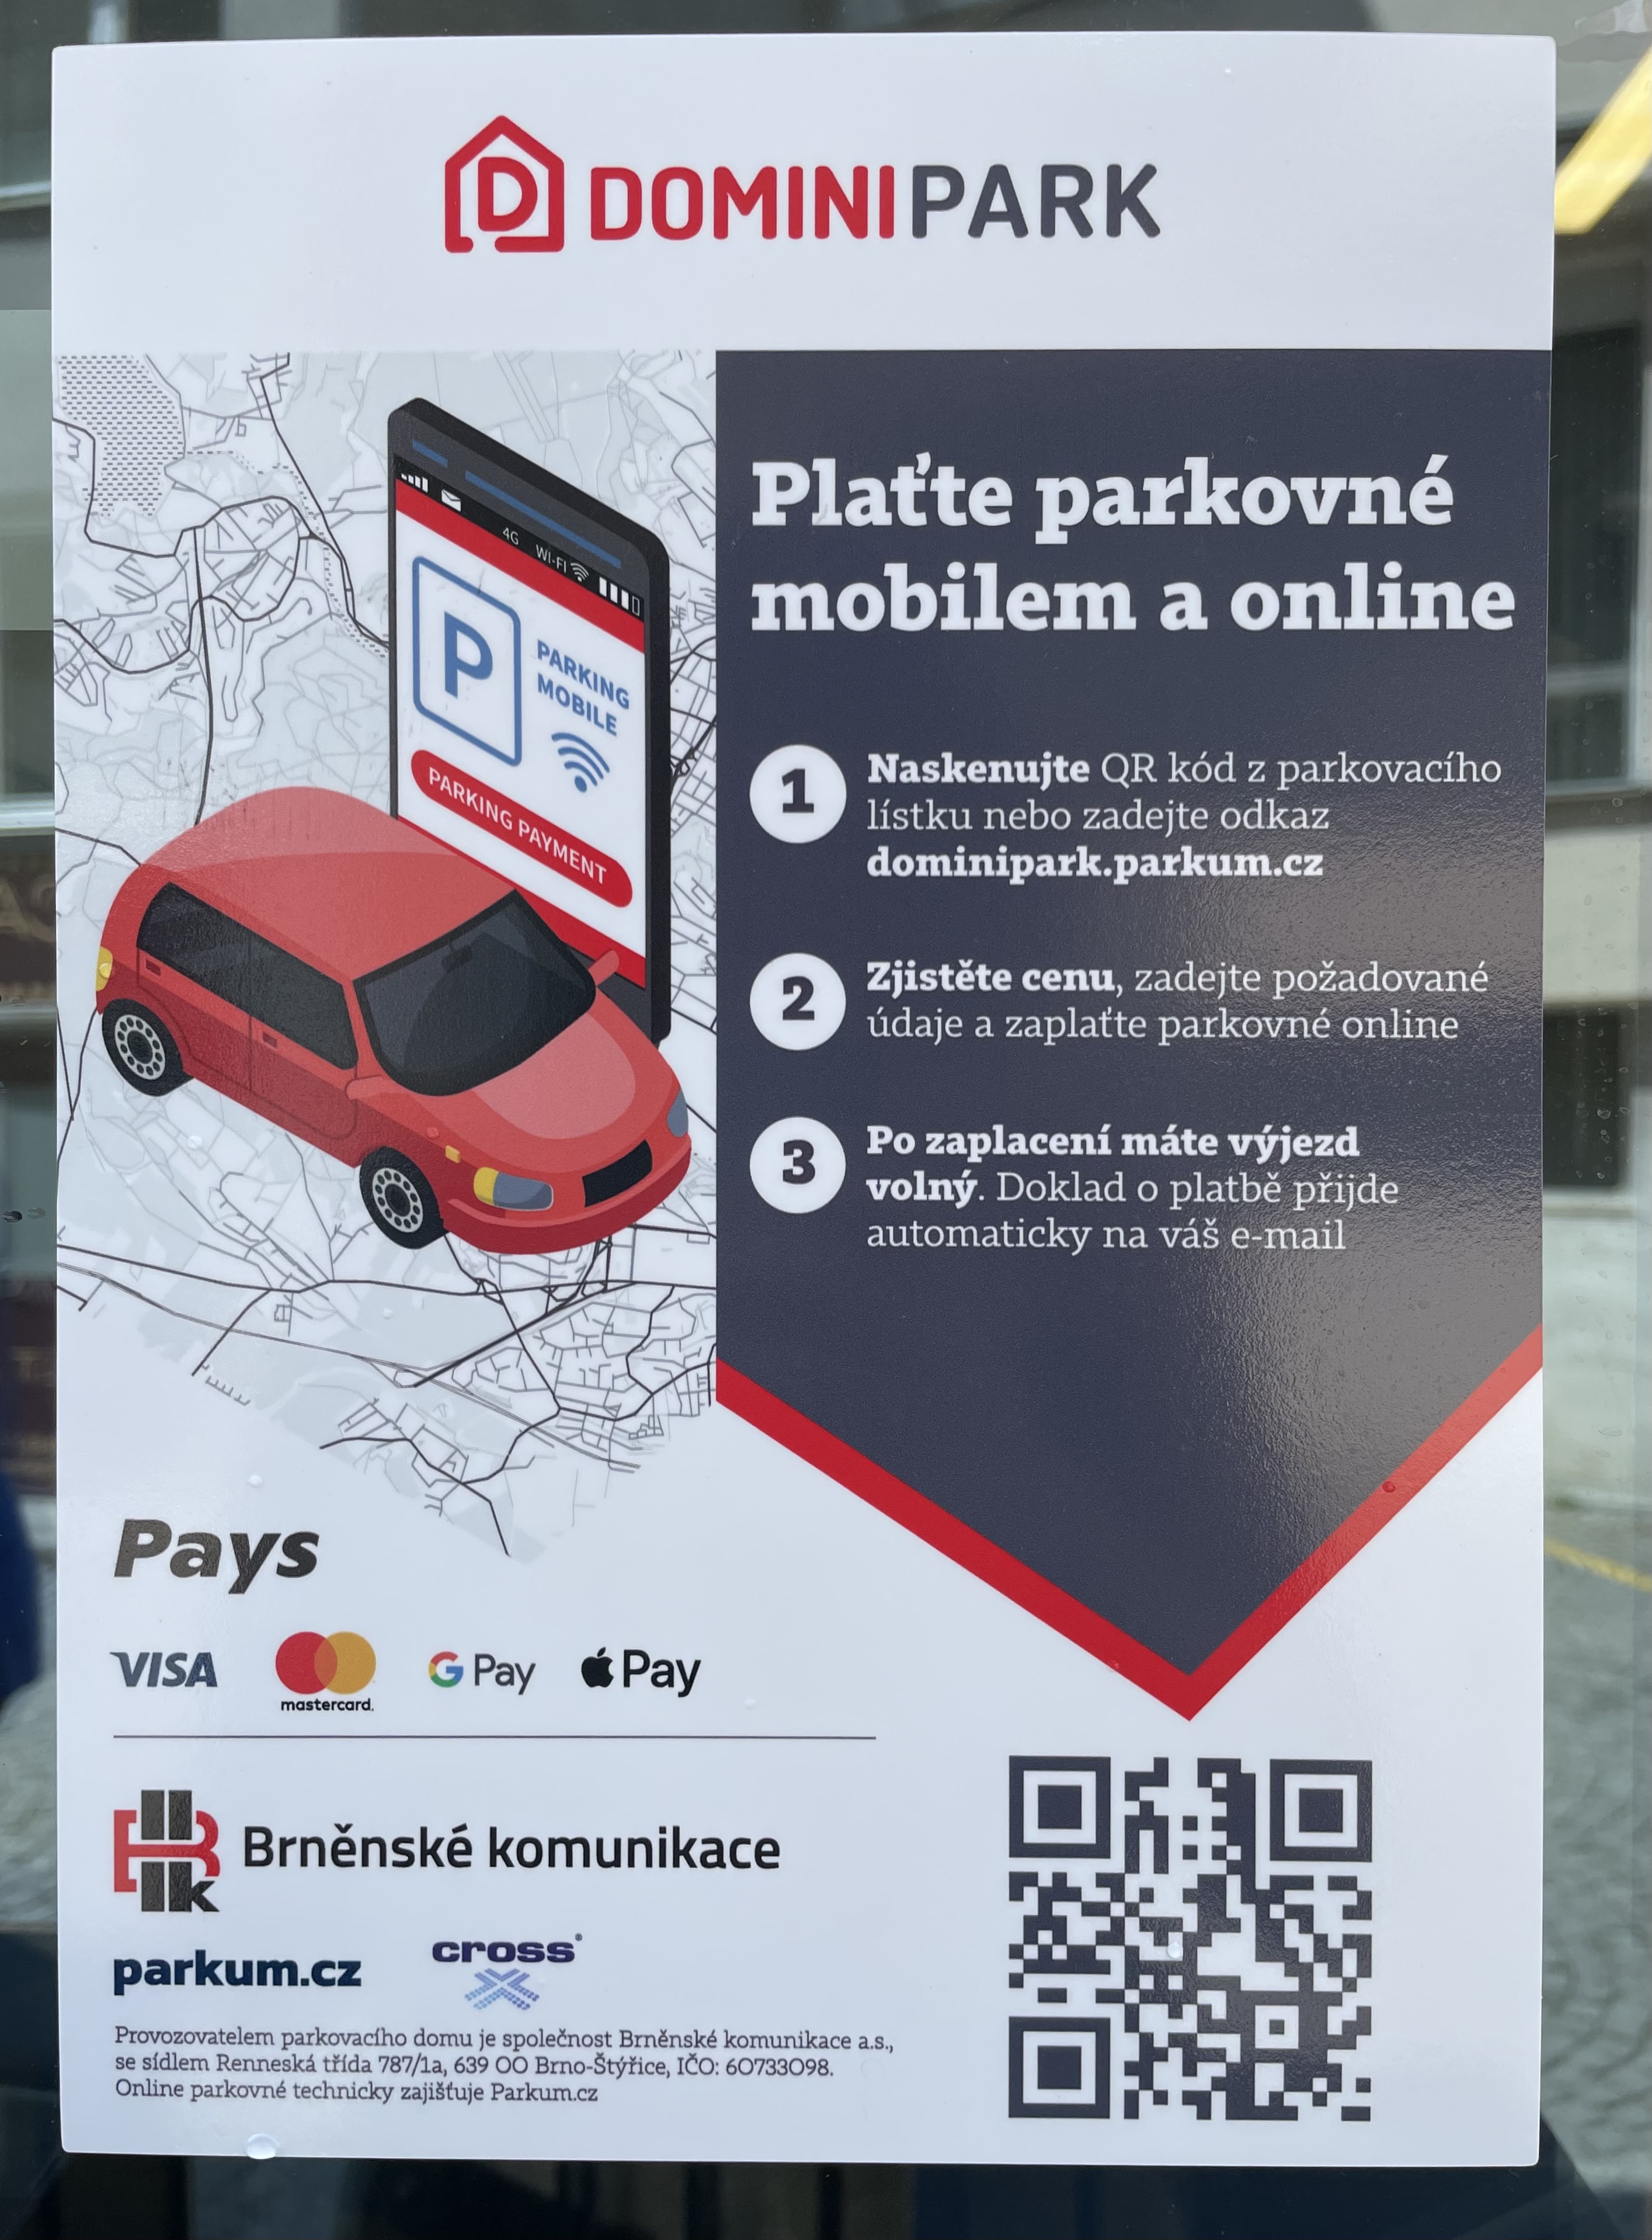 Na obrázku jsou vyfoceny informace týkající se mobilní platby online za parkování. Jsou zde instrukce, že k uhrazení parkovného stačí buď navštívit webovou stránku dominipark.parkum.cz nebo oskenovat QR kód přímo na parkovacím lístku.